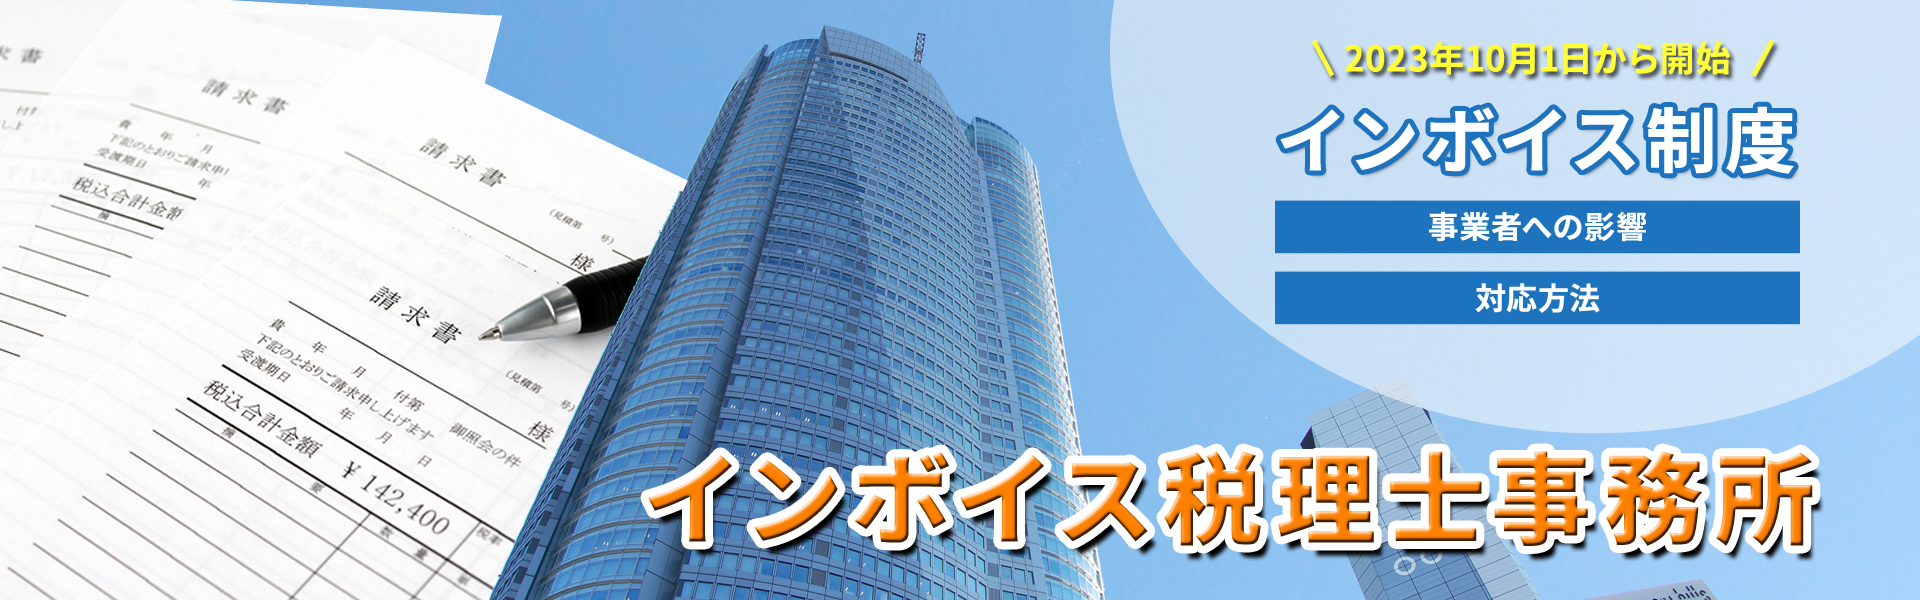 インボイス・適格請求書に強い東京都港区六本木にあるインボイス税理士事務所。インボイス・適格請求書に関する対応を税理士がアドバイスをさせていただきます。